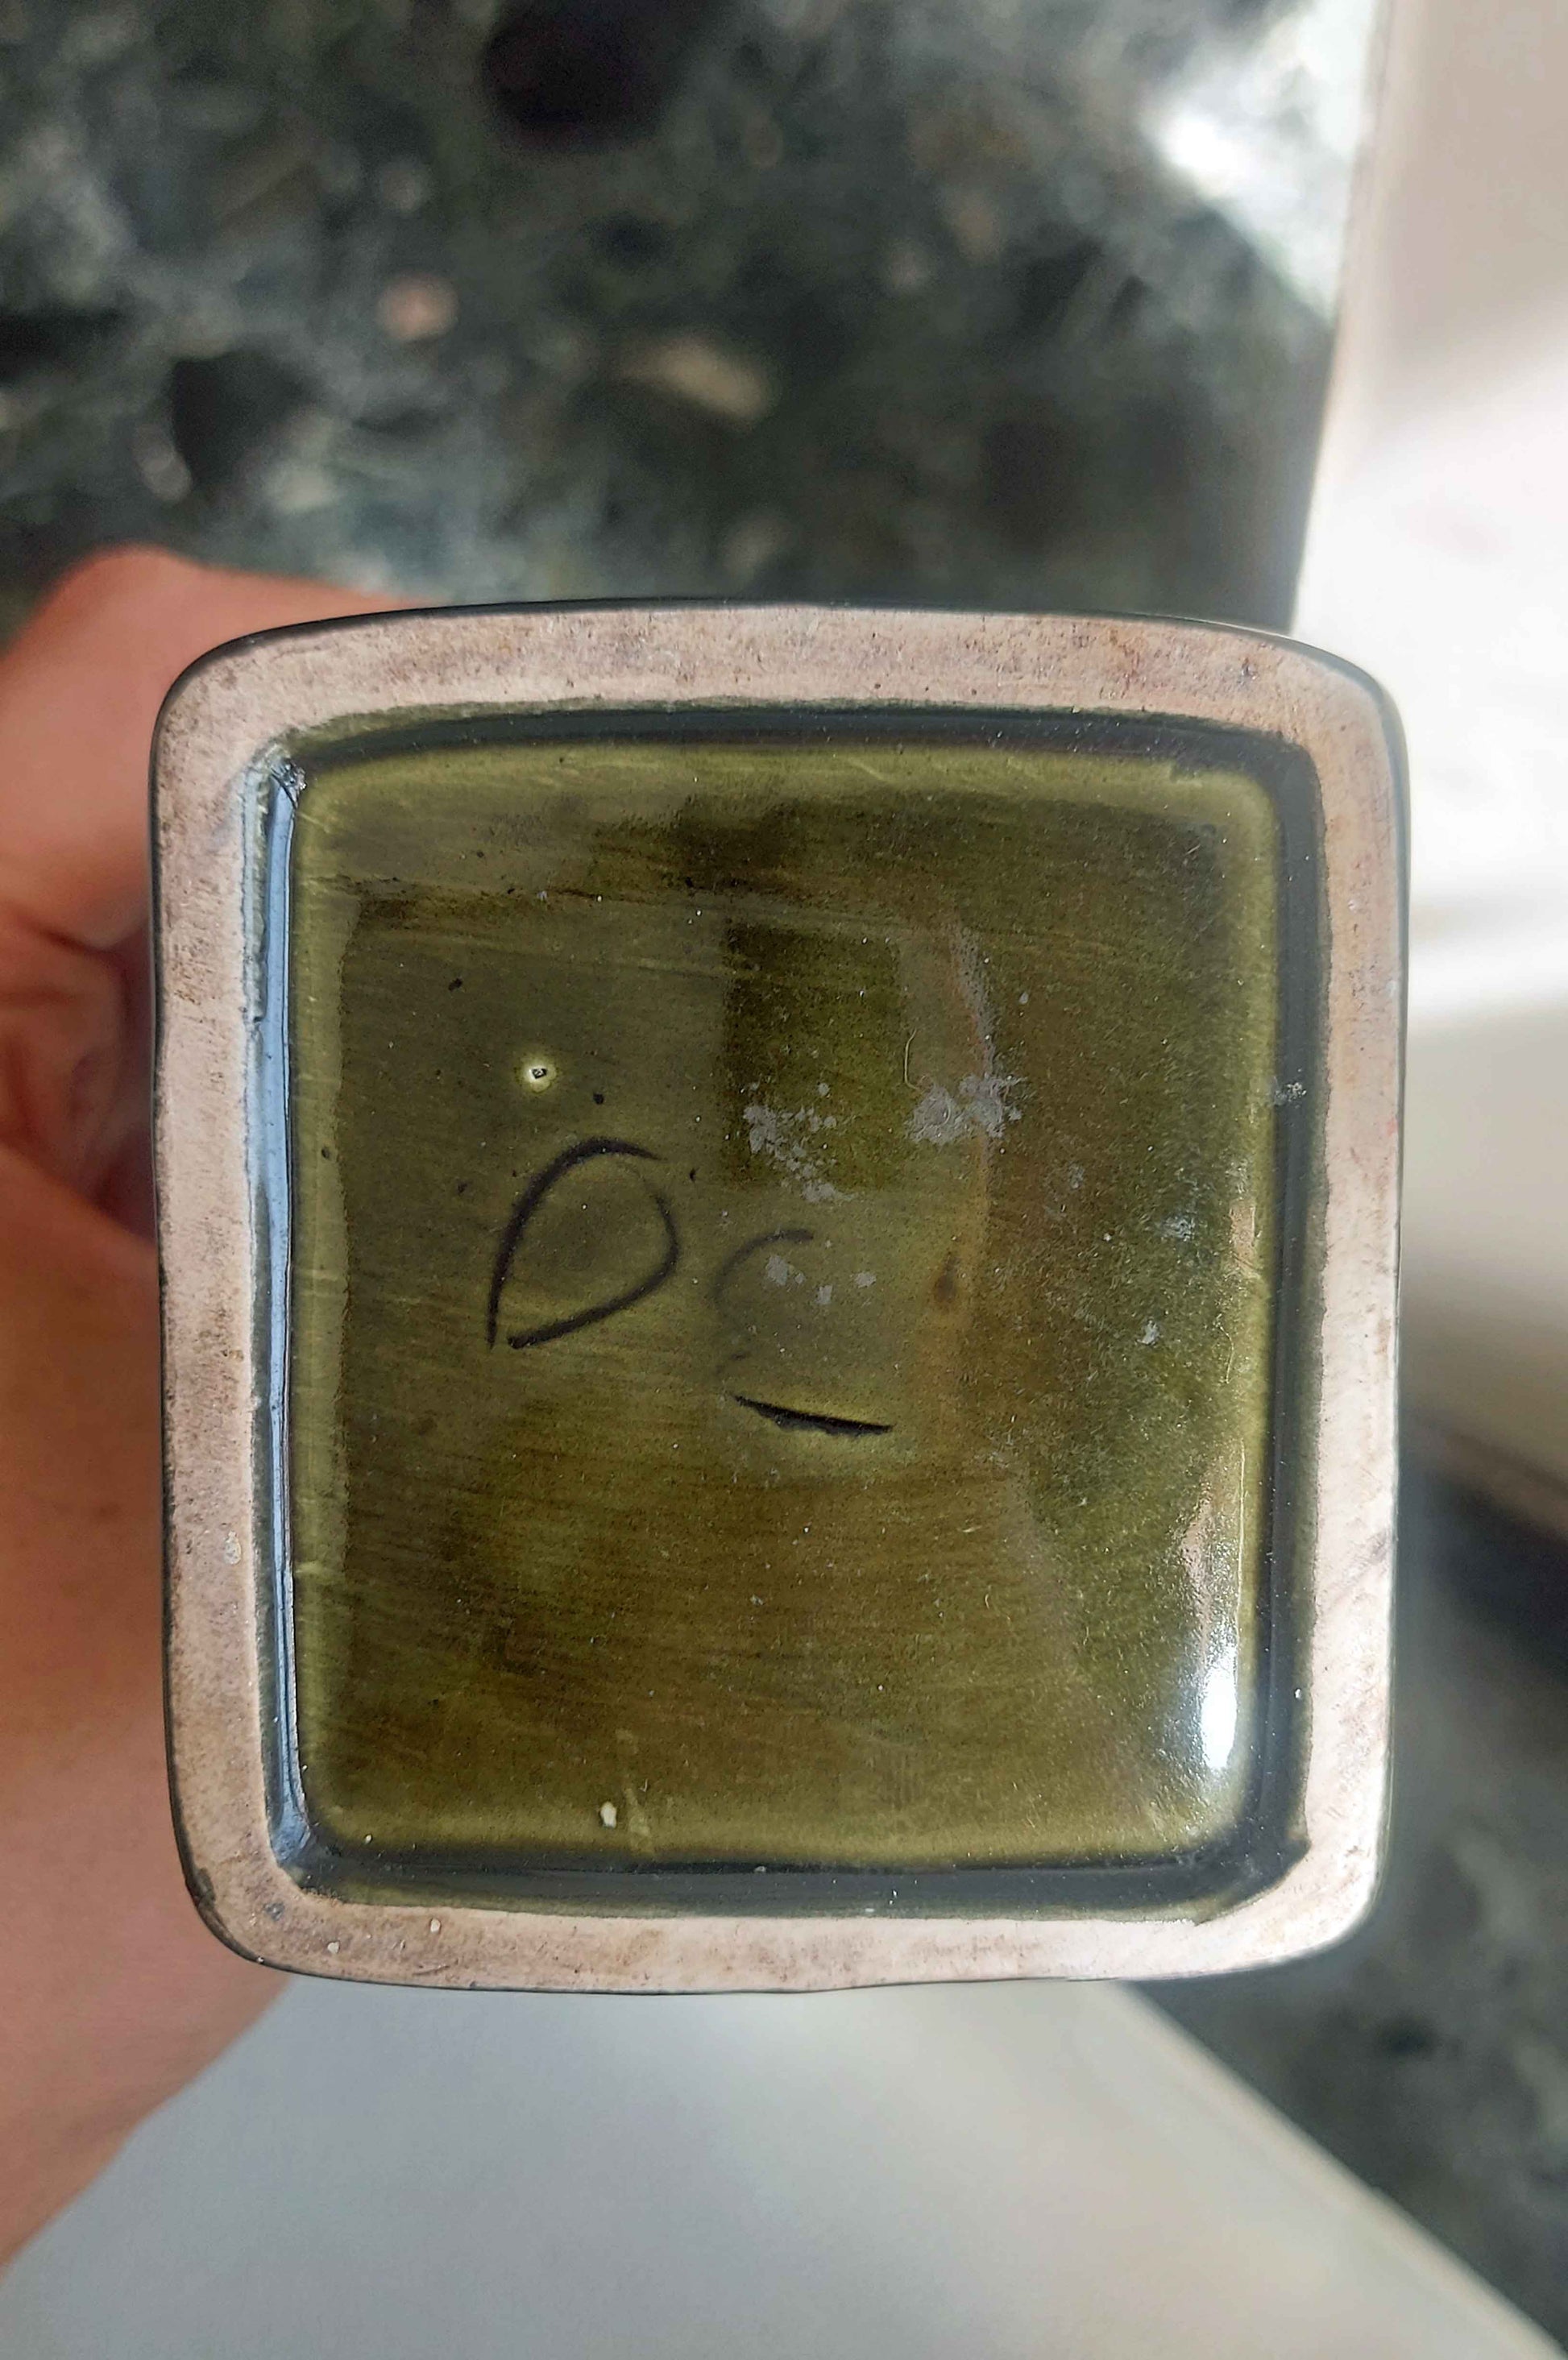 de 3d oe makers mark on vintage ceramic serving jug